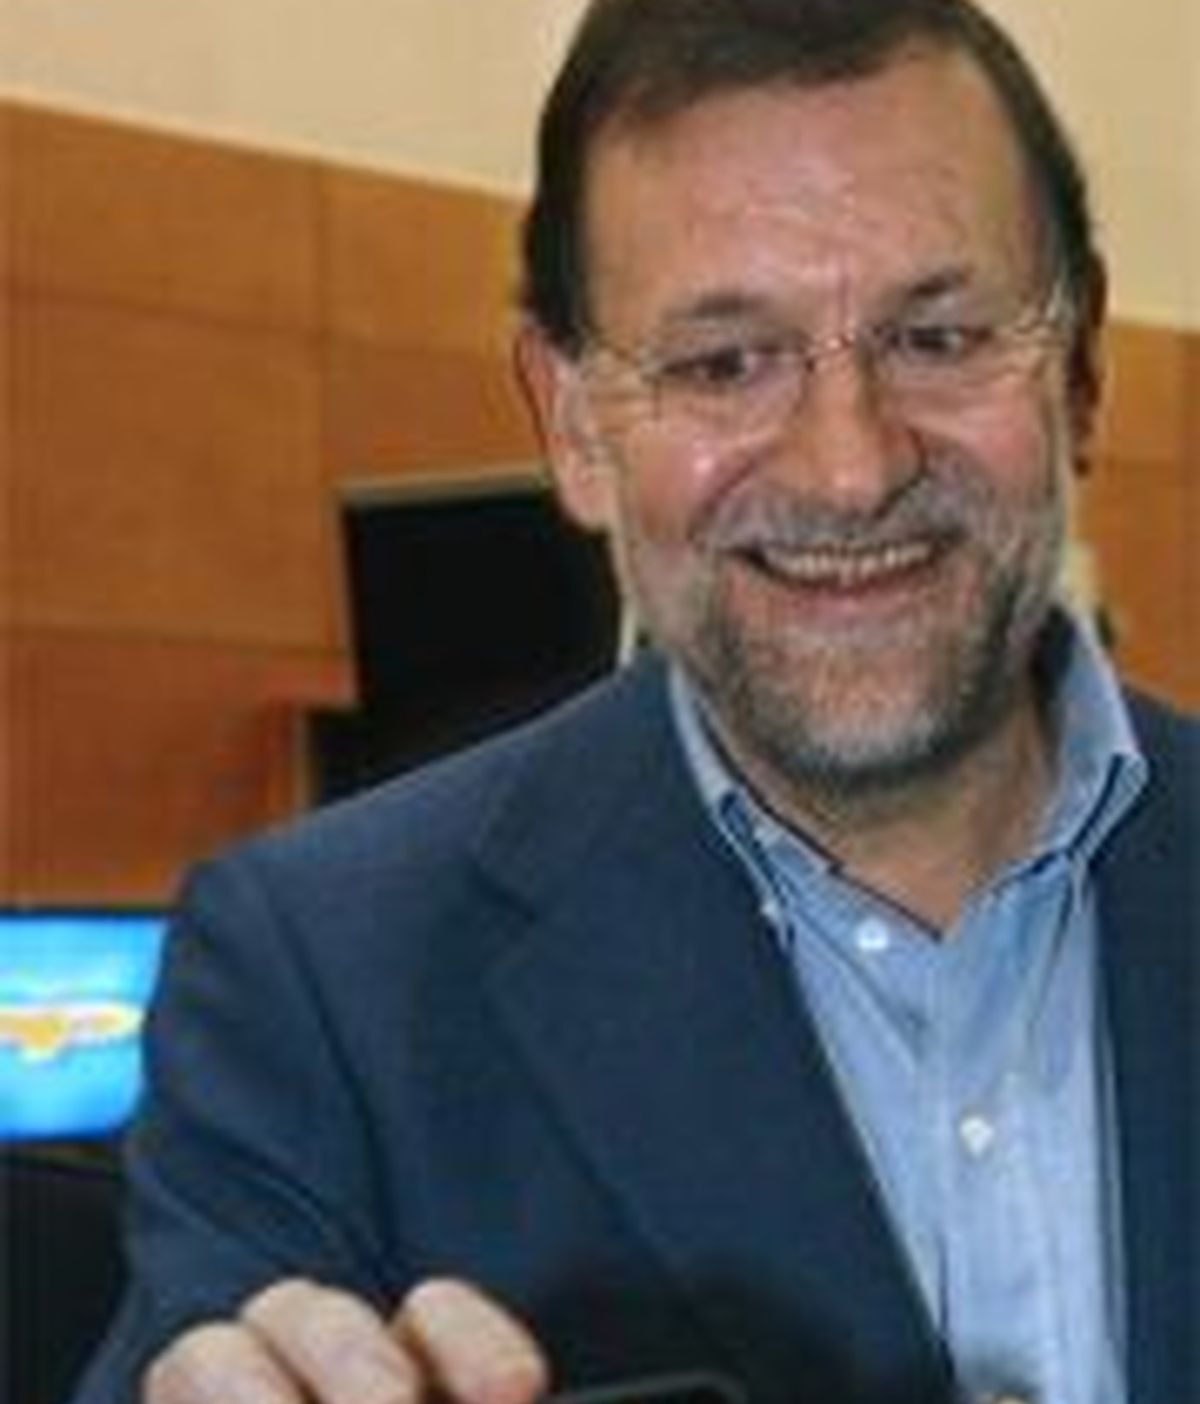 Rajoy sostiene un ipod con un video suyo en la conferencia del PP sobre tecnologías. EFE